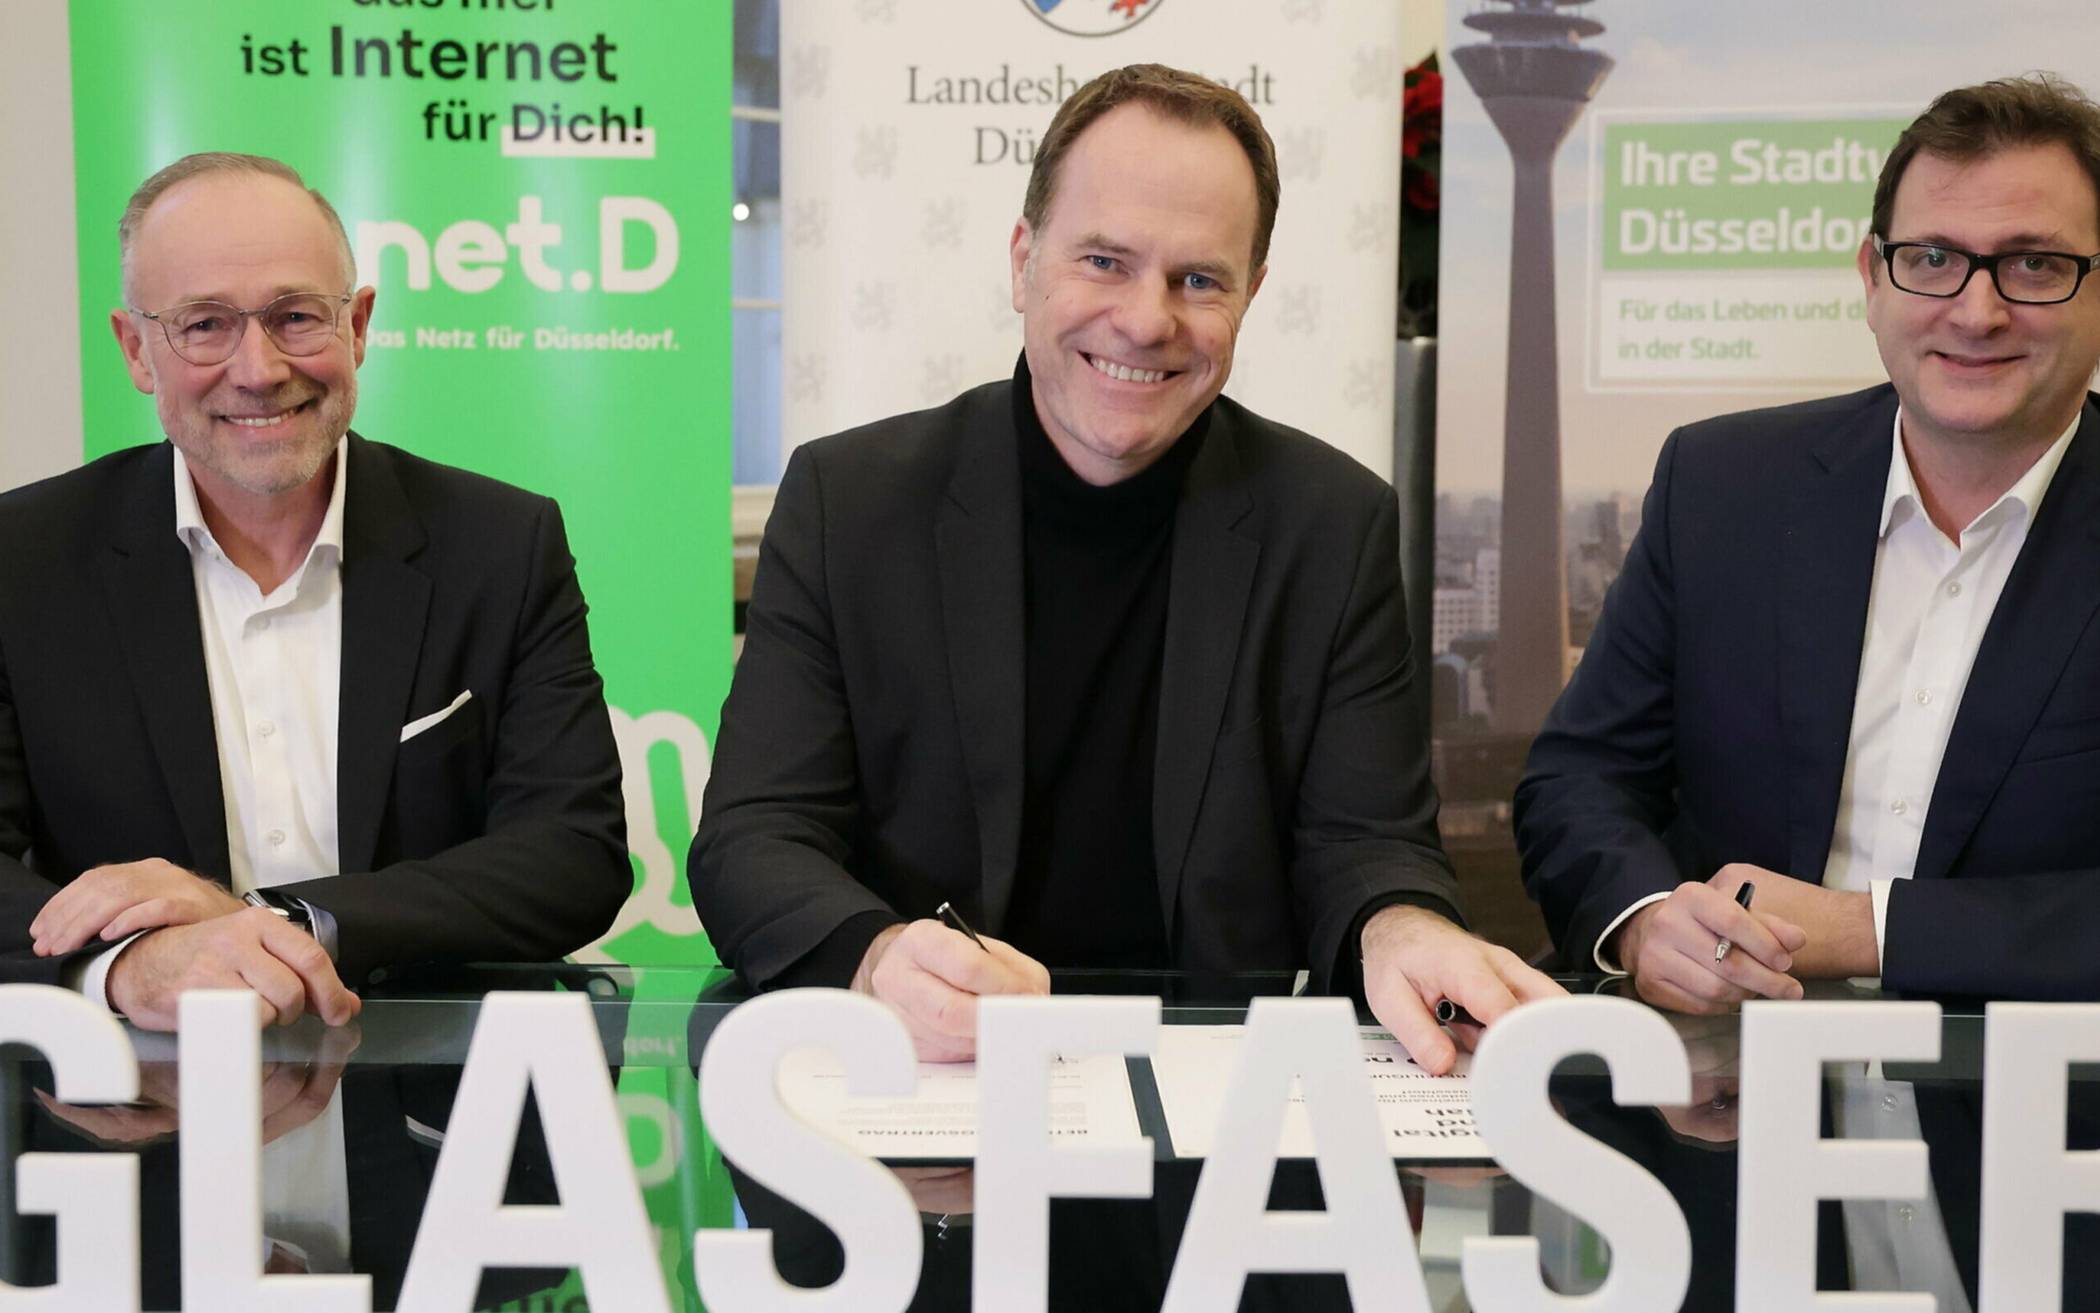 Bürgermeister Stephan Keller will in die digitale Zukunft der Stadt investieren. Foto: Stadt Düsseldorf / David Young